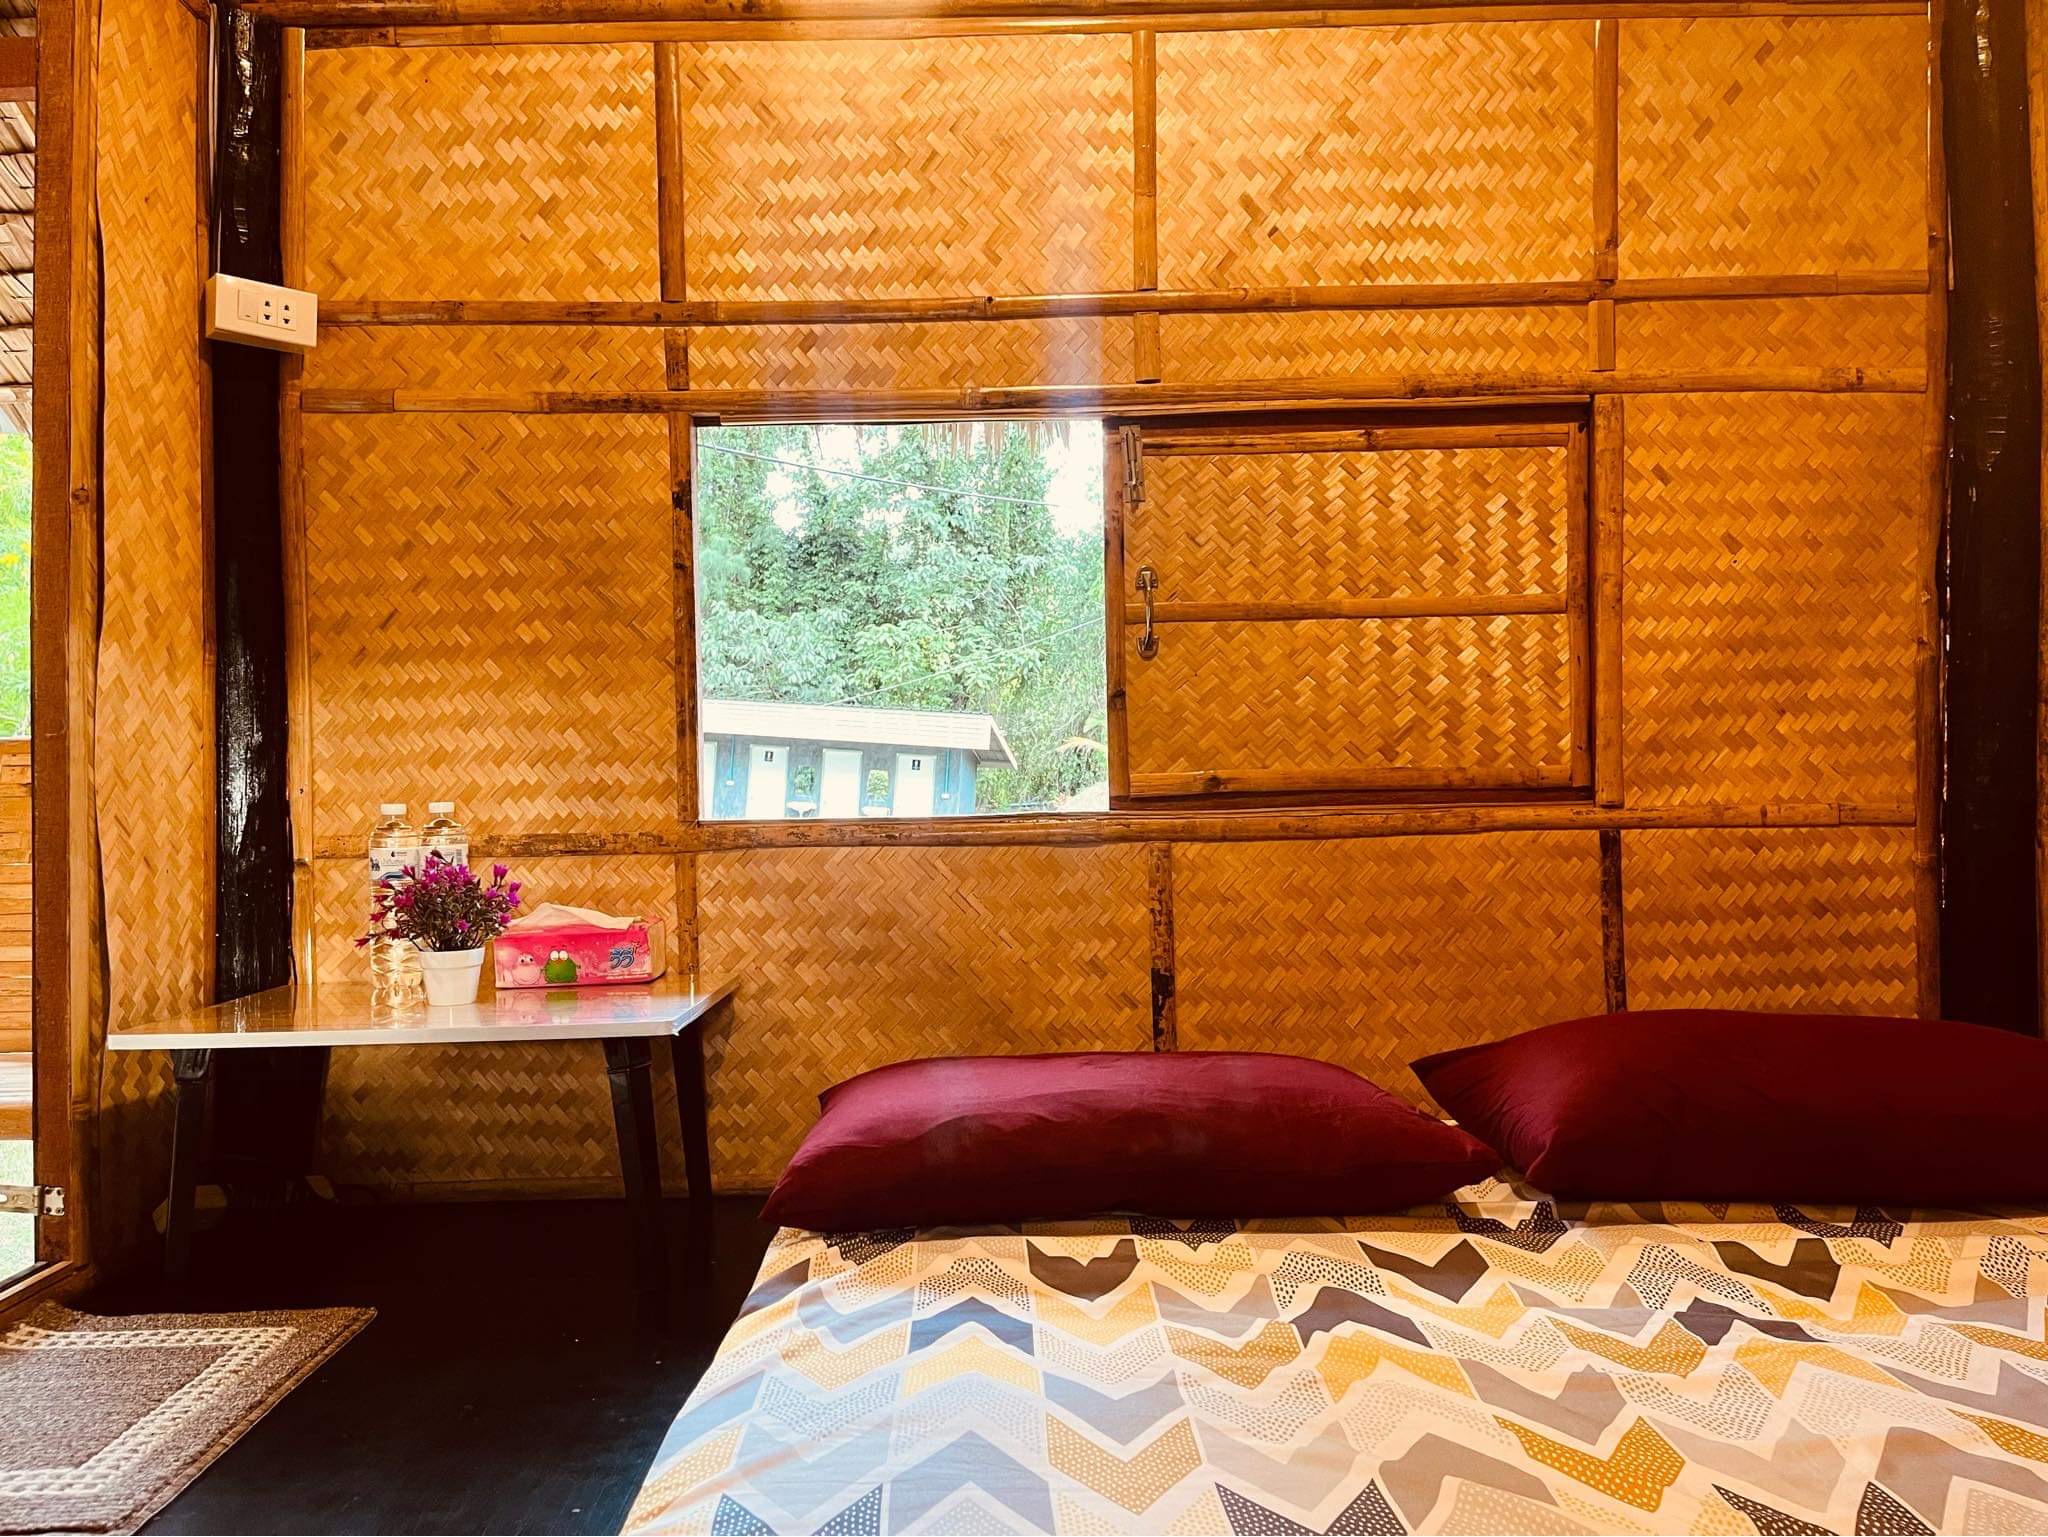 รูปห้องพัก พัดลม ห้องน้ำรวม ภูอิงธารแคมป์ สวนผึ้ง / Phu Ing Than Camp, Suan Phueng